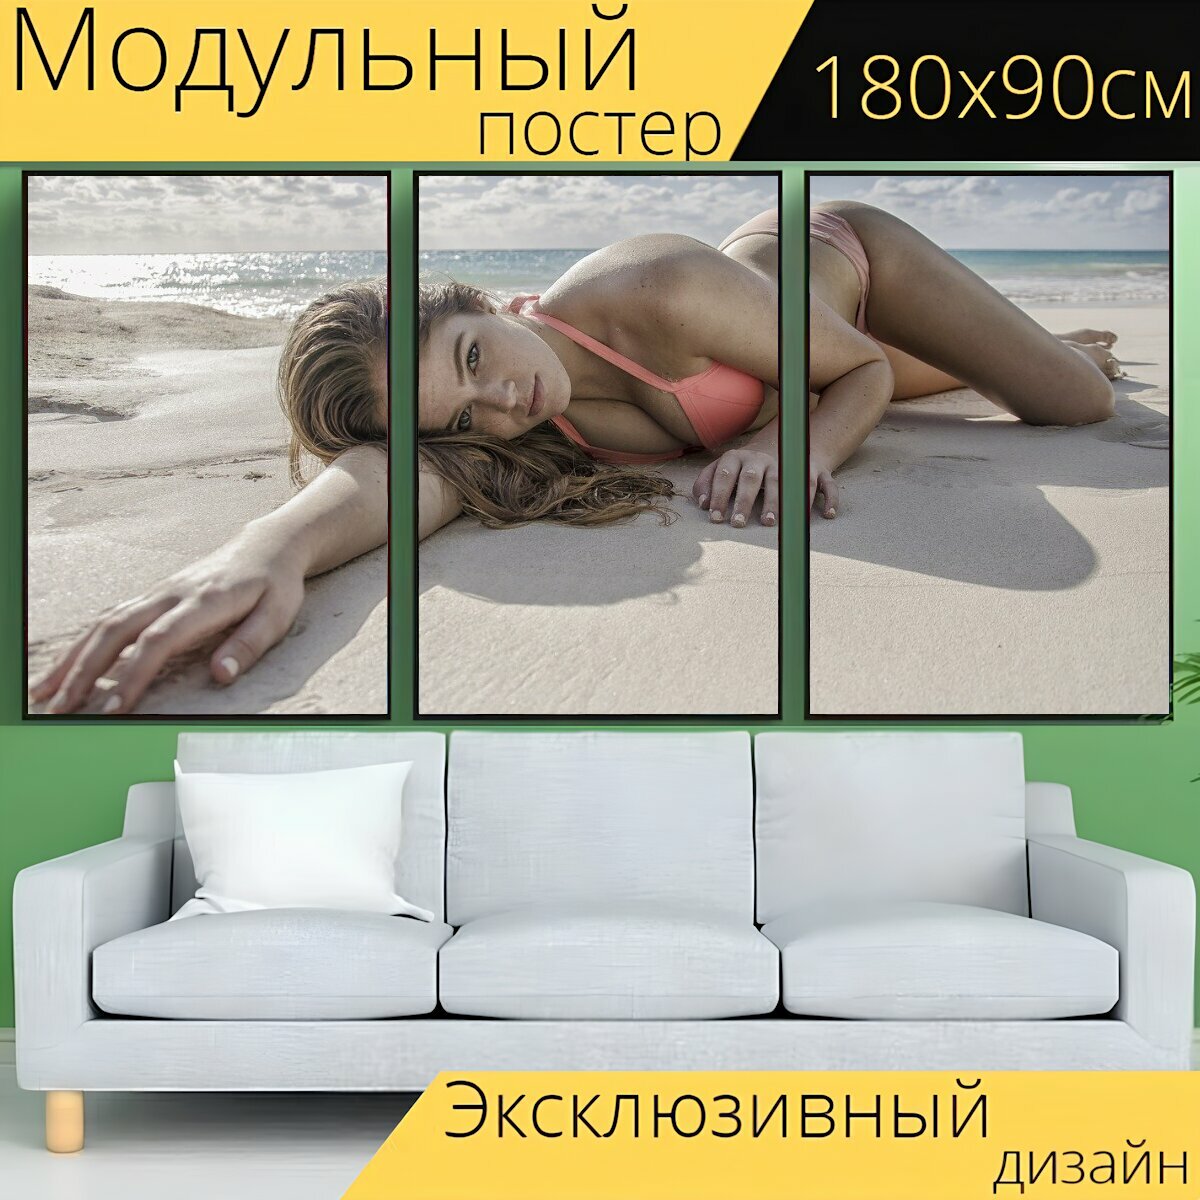 Модульный постер "Пляж, женщина, бикини" 180 x 90 см. для интерьера